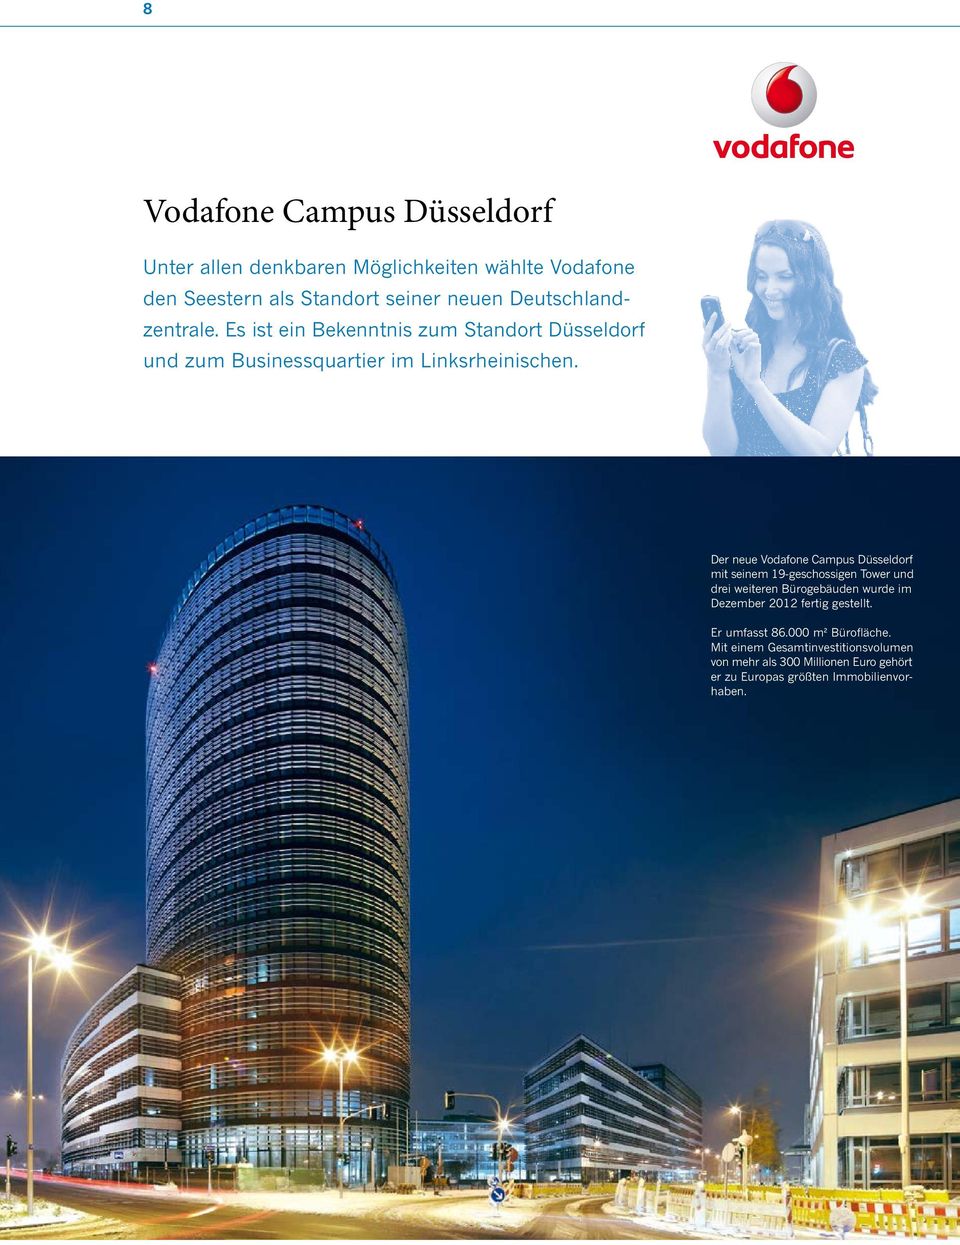 Der neue Vodafone Campus Düsseldorf mit seinem 19 geschossigen Tower und drei weiteren Bürogebäuden wurde im Dezember 2012 fertig